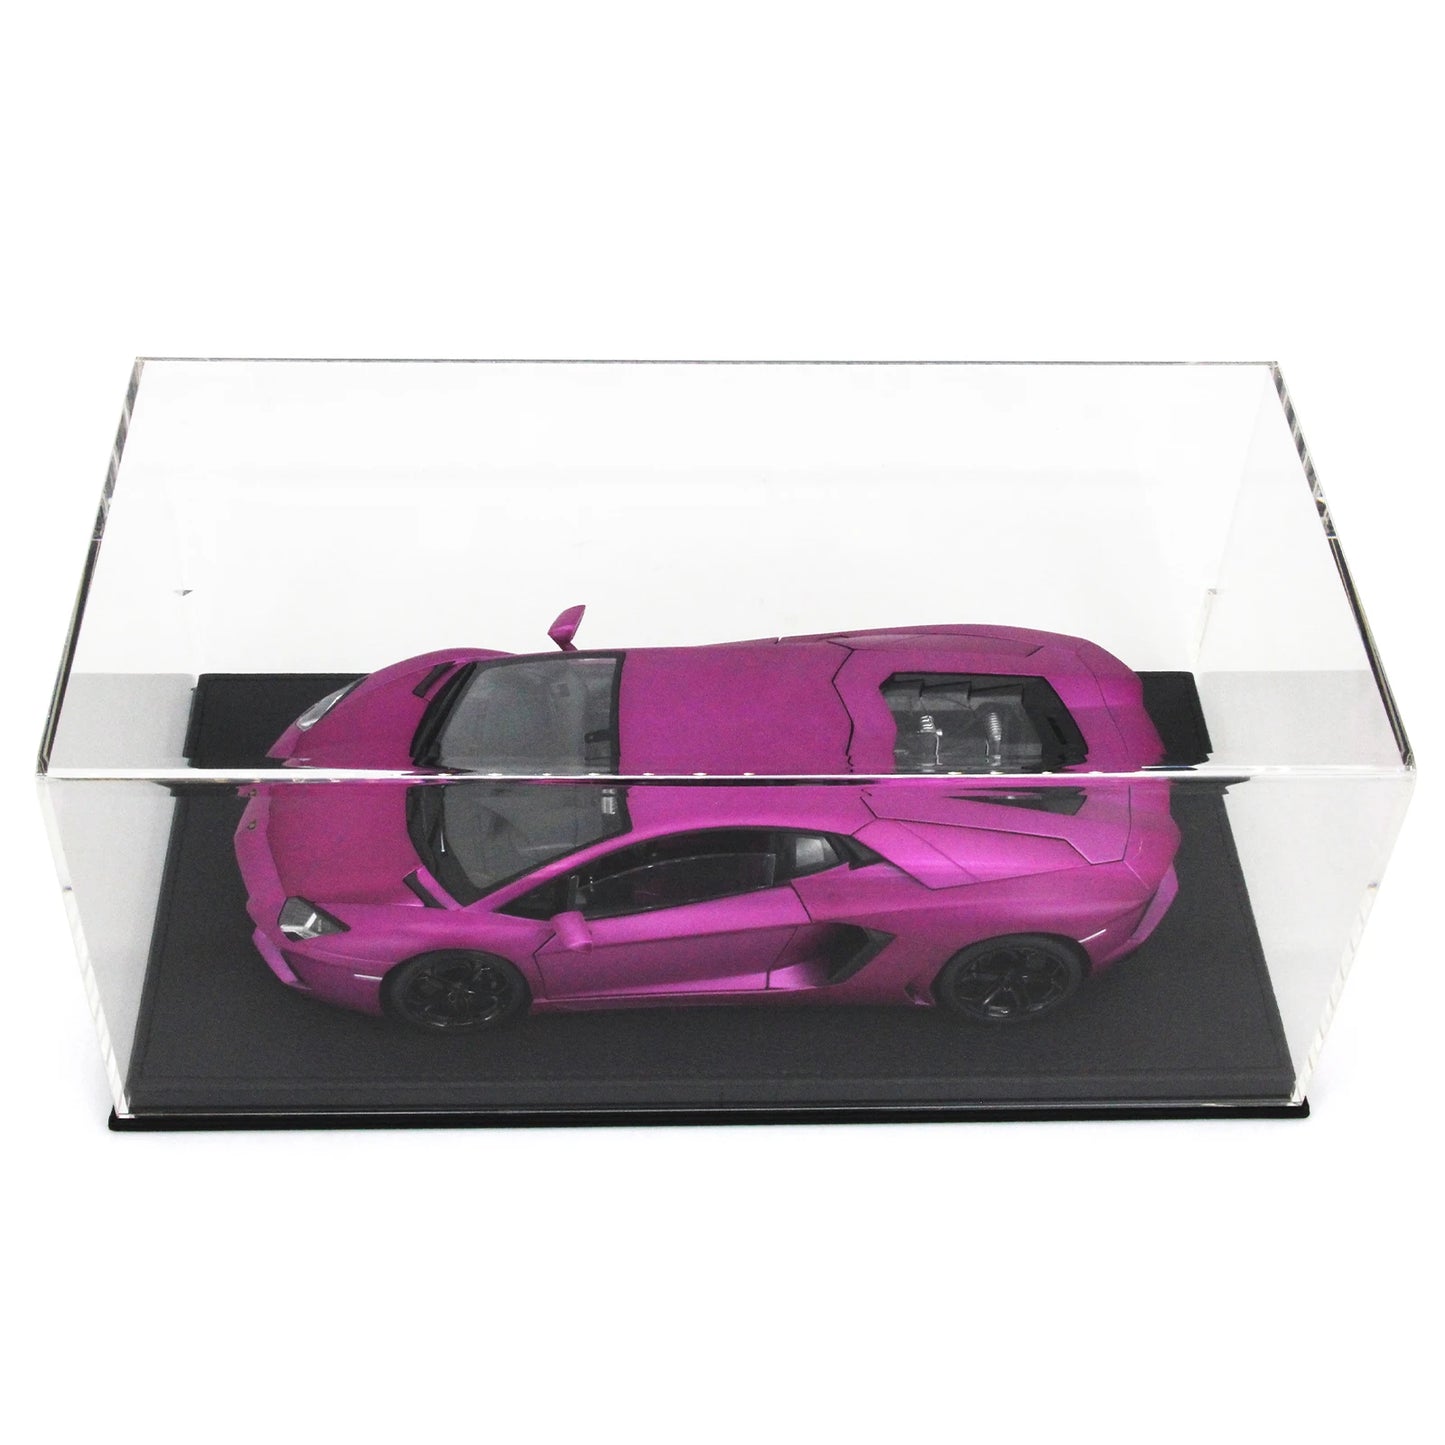 Paudi 1/18 Car Model Transparent Acrylic Display Box Anti-dust Cover Blind Box